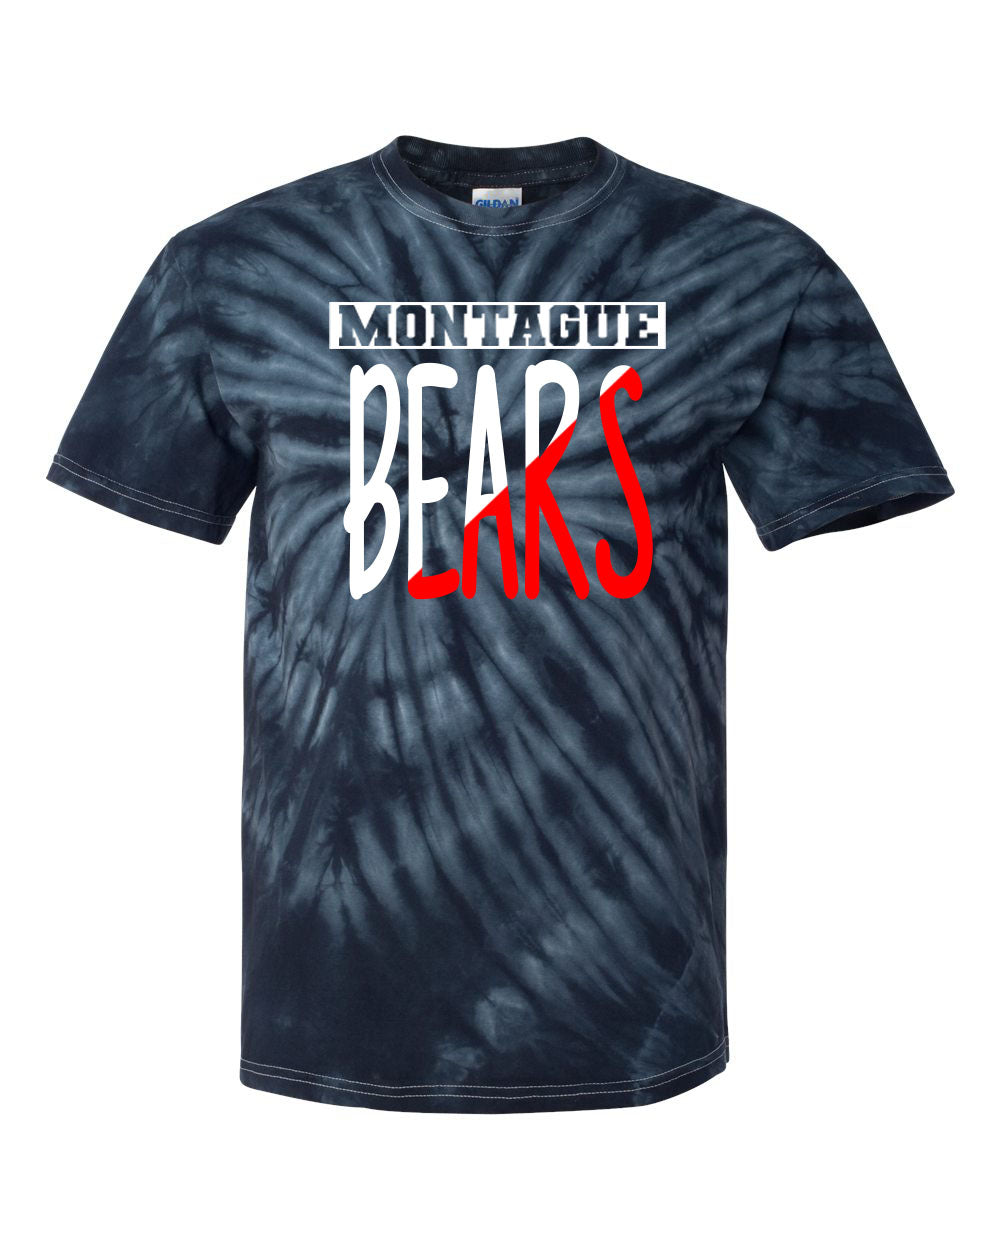 Montague Tie Dye t-shirt Design 7